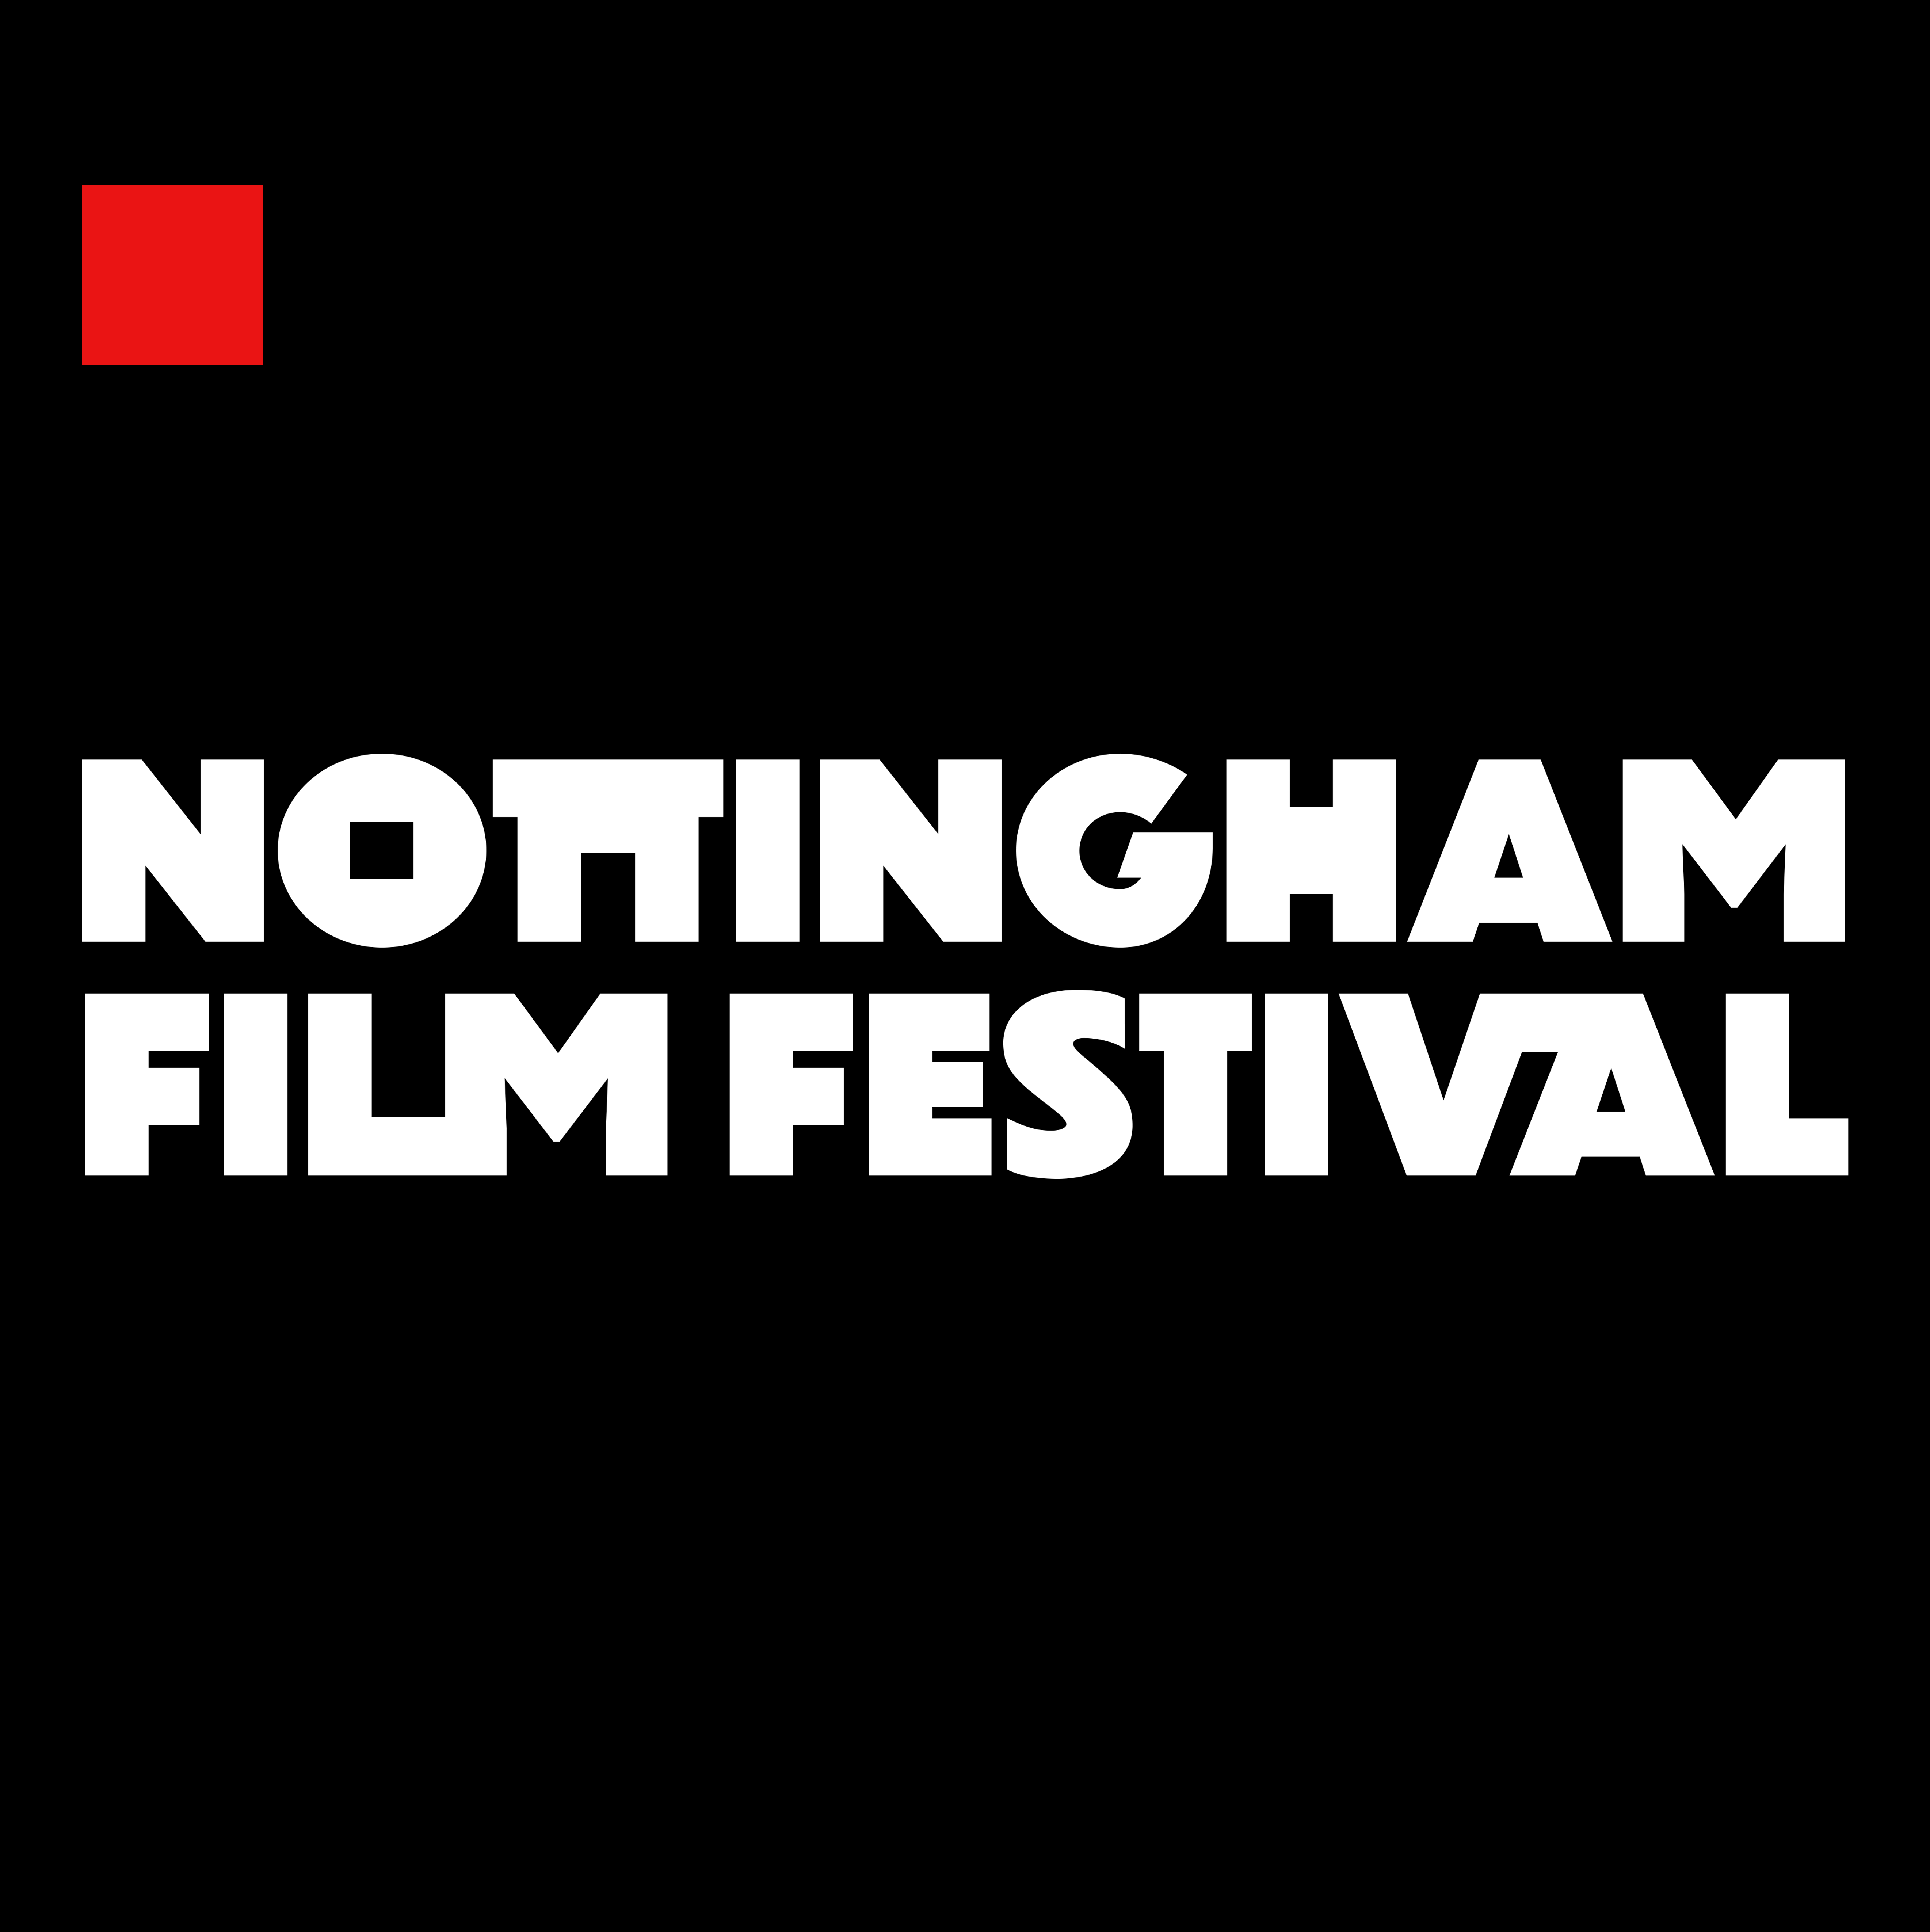 Nottingham film festival logo